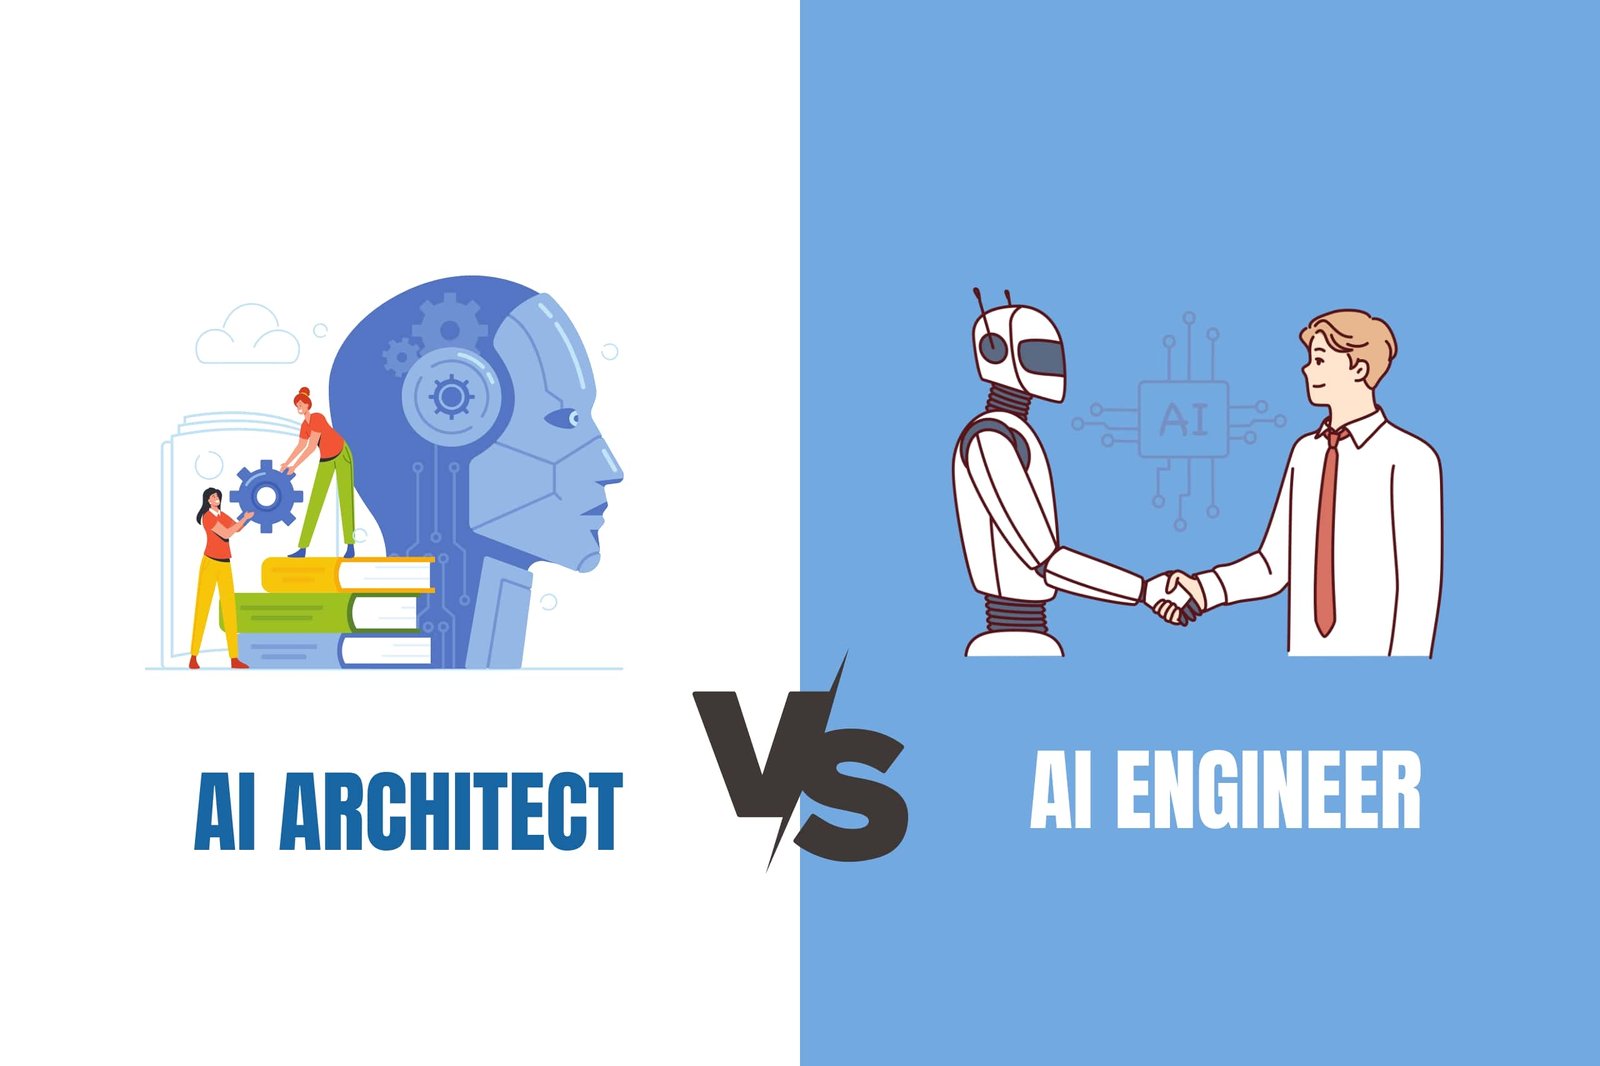 AI Engineer vs. AI Architect